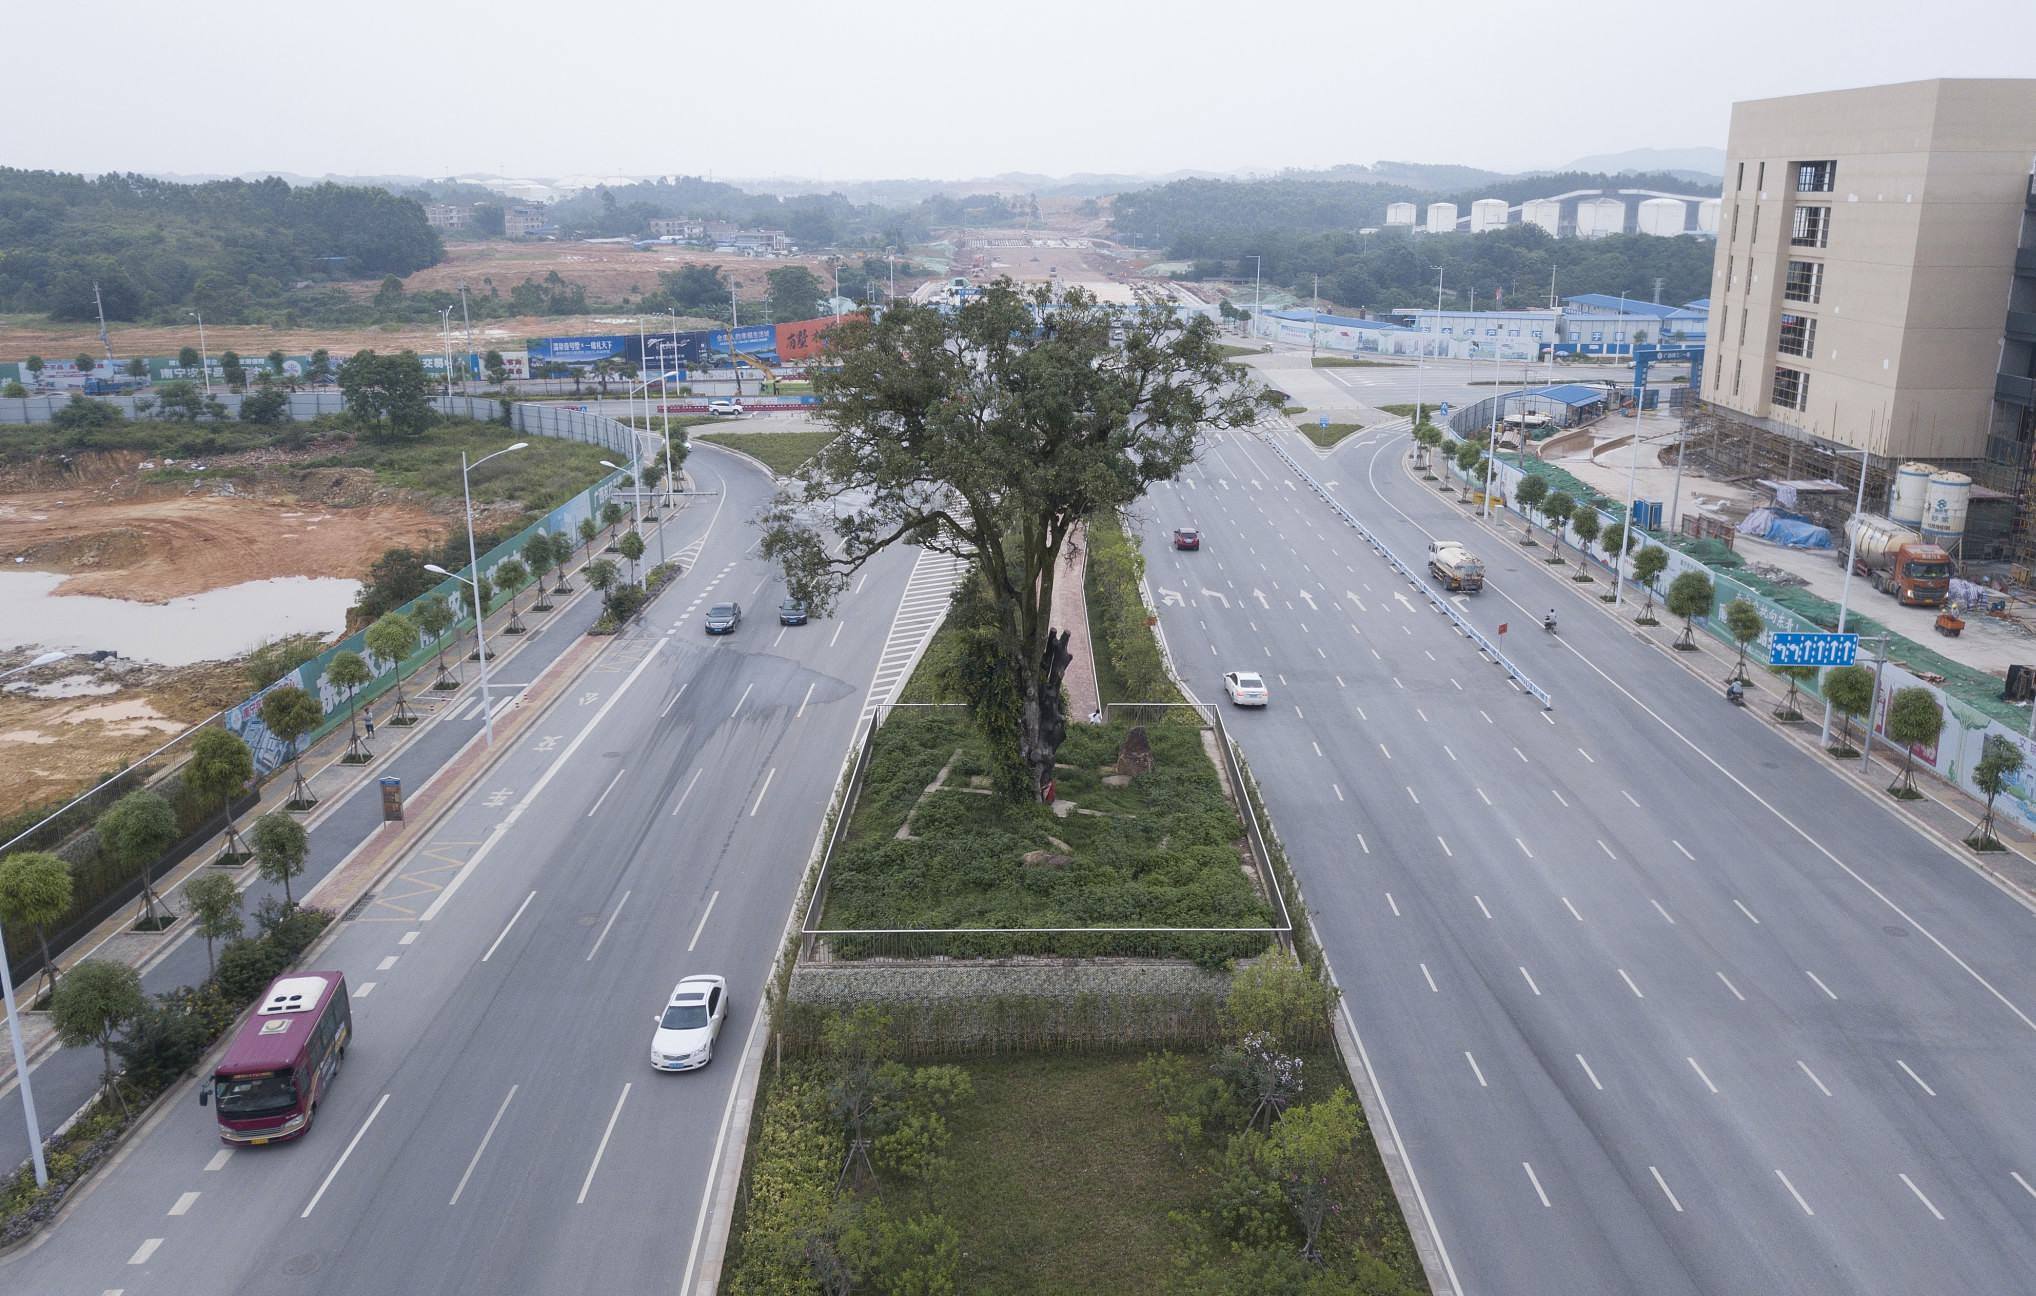 จีนเลือกที่จะสร้างถนนแคบลง เพราะไม่อยากไปตัดต้นอัลมอนด์เก่าแก่อายุ 402 ปี